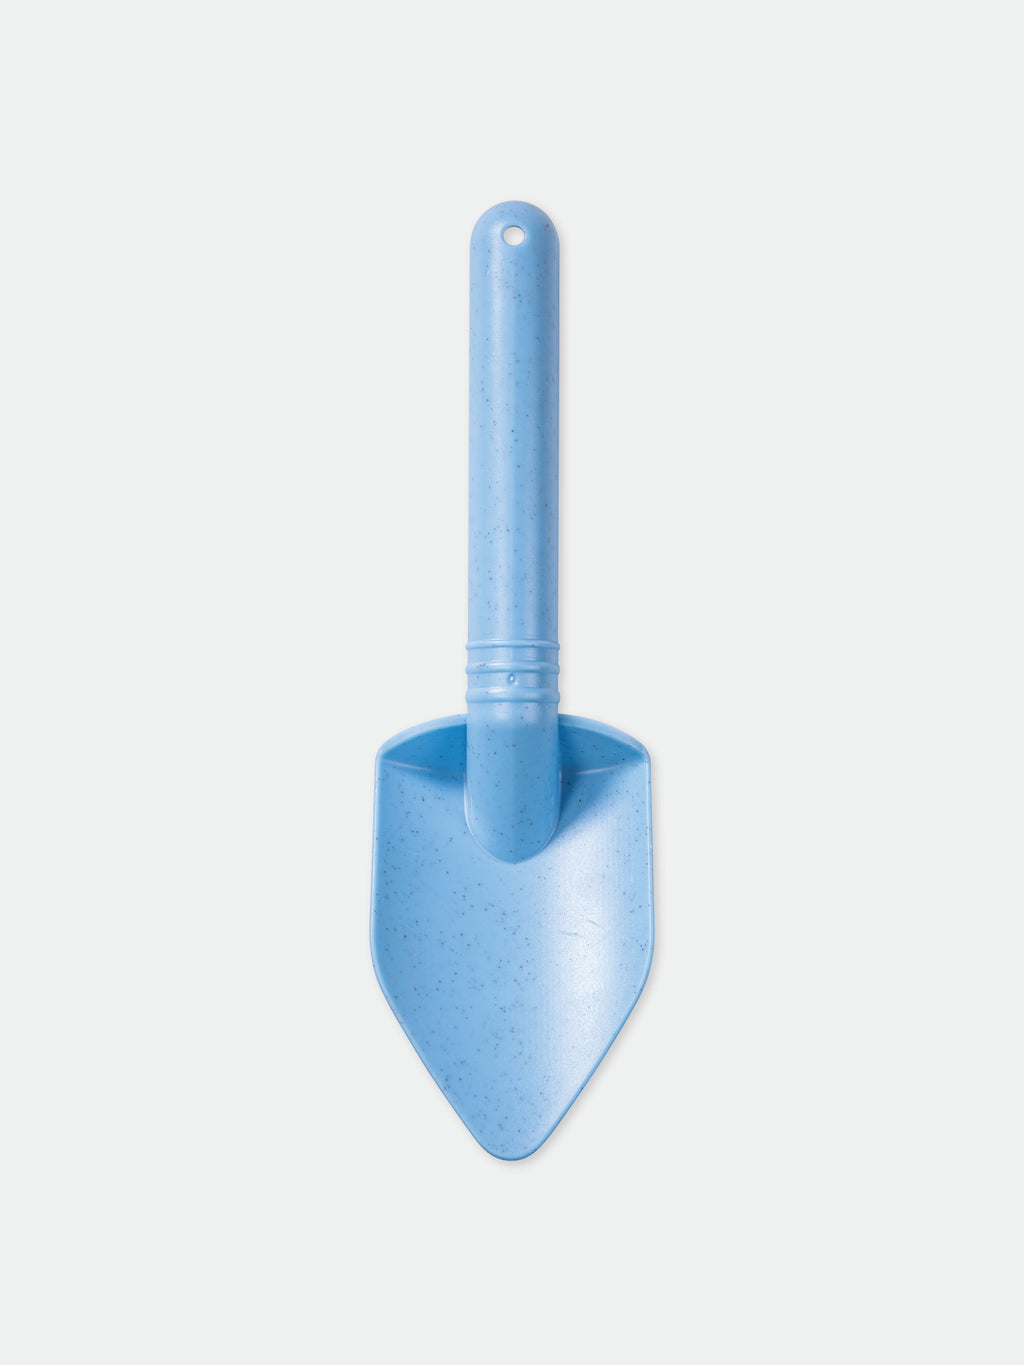 Light blue shovel for kids